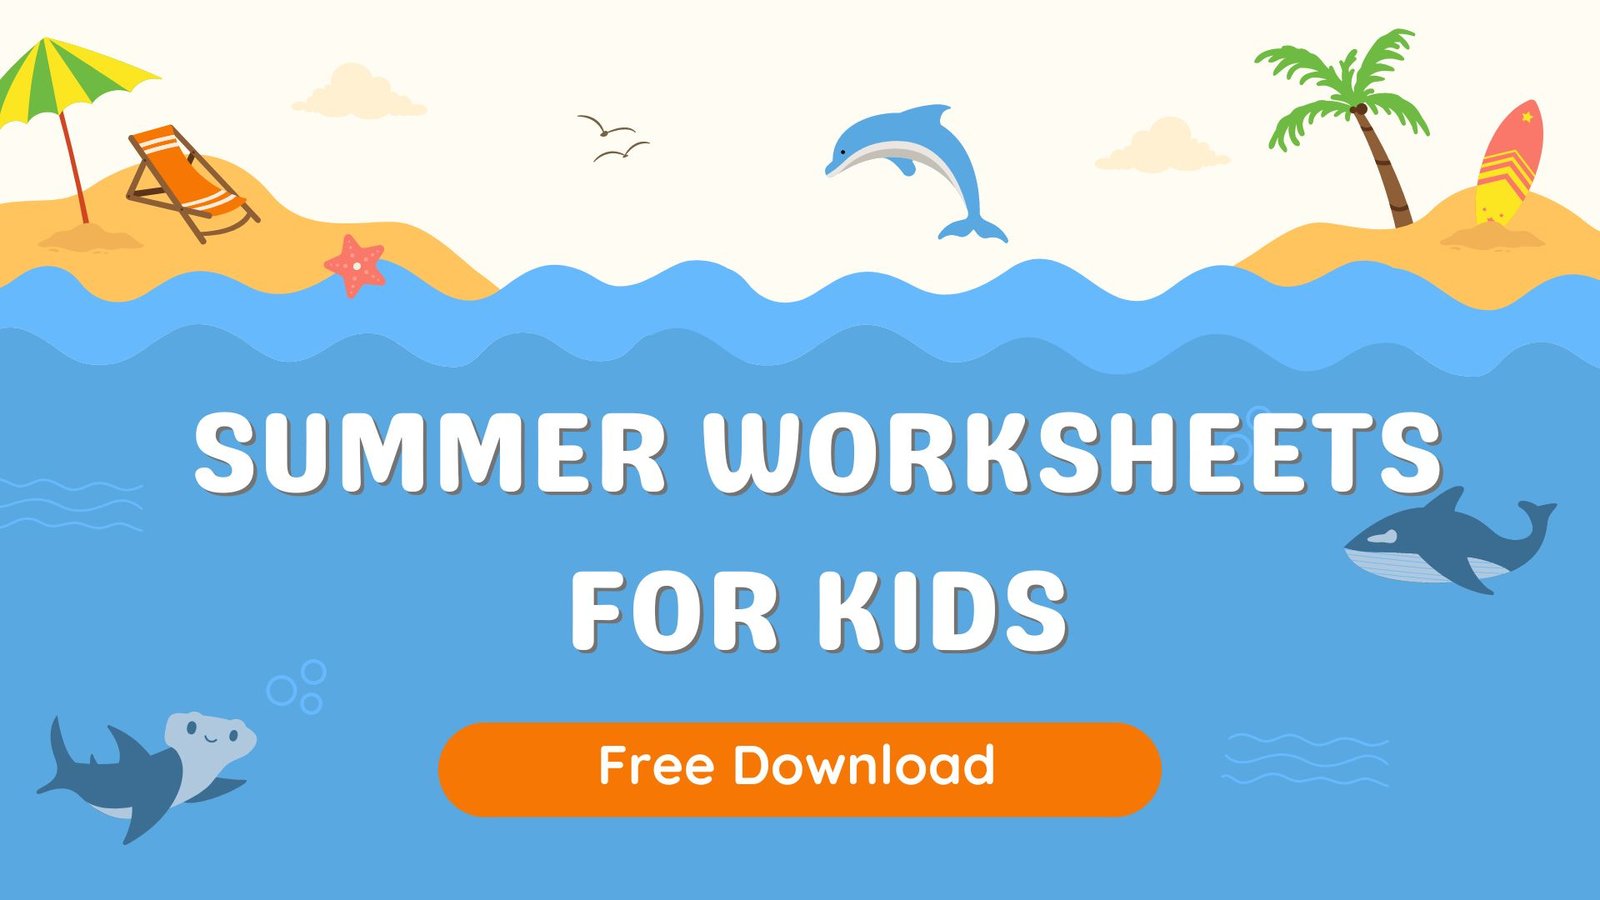 Free Summer Worksheets For Kids